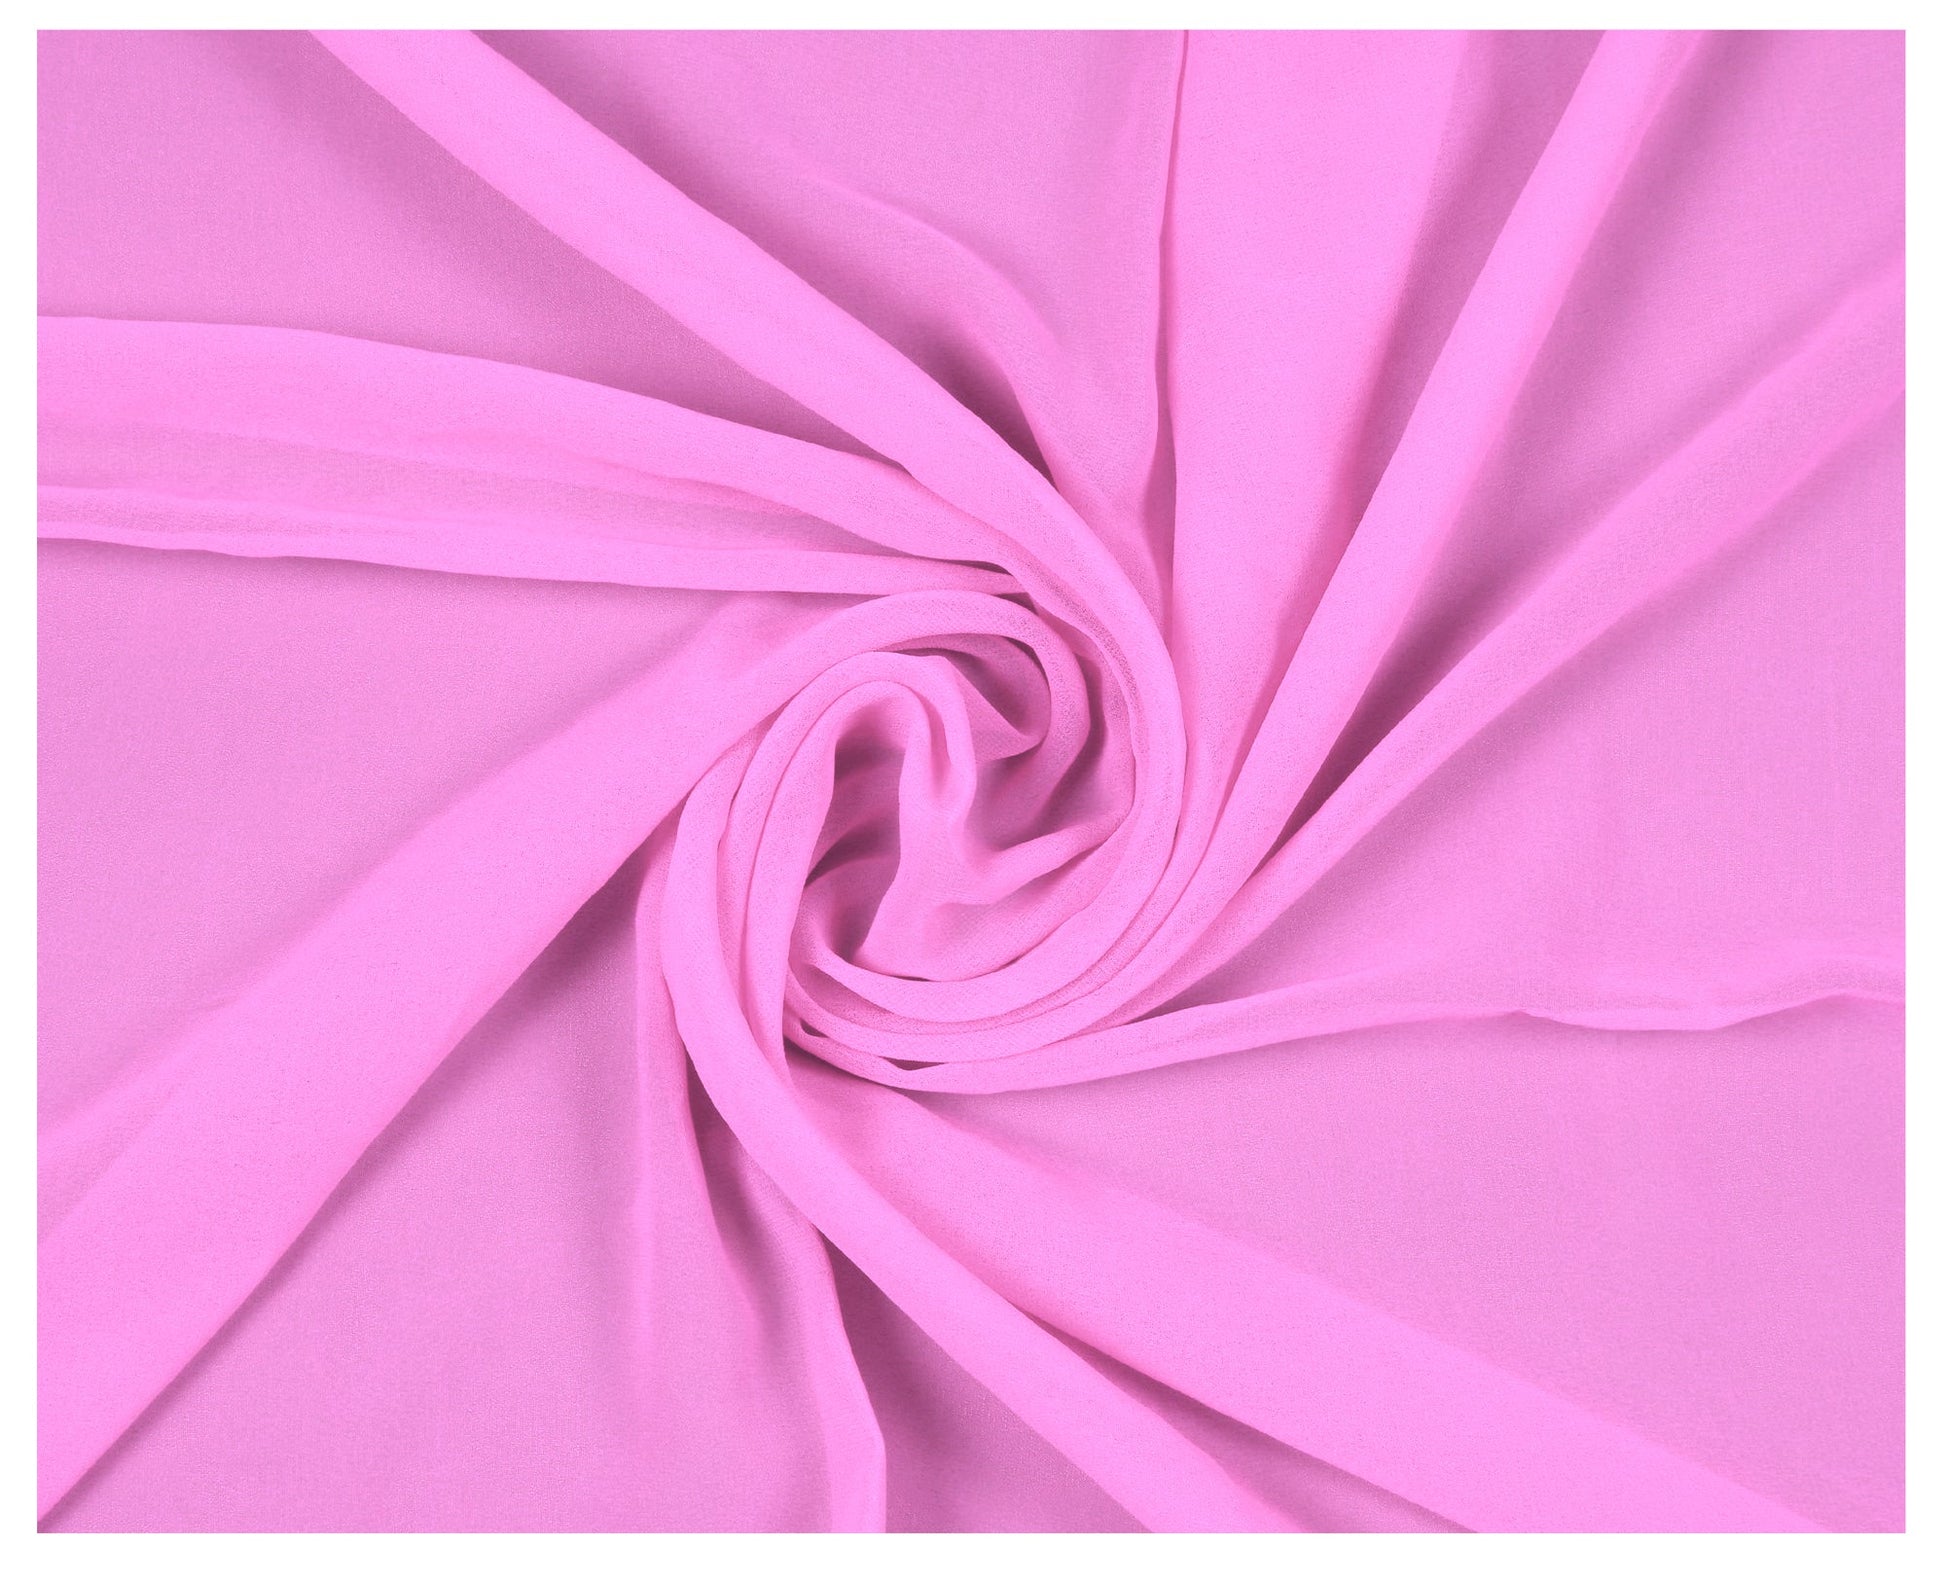 Bubblegum Pink,1dbbbf4e-fa6b-4bb2-bcff-20e04551a913